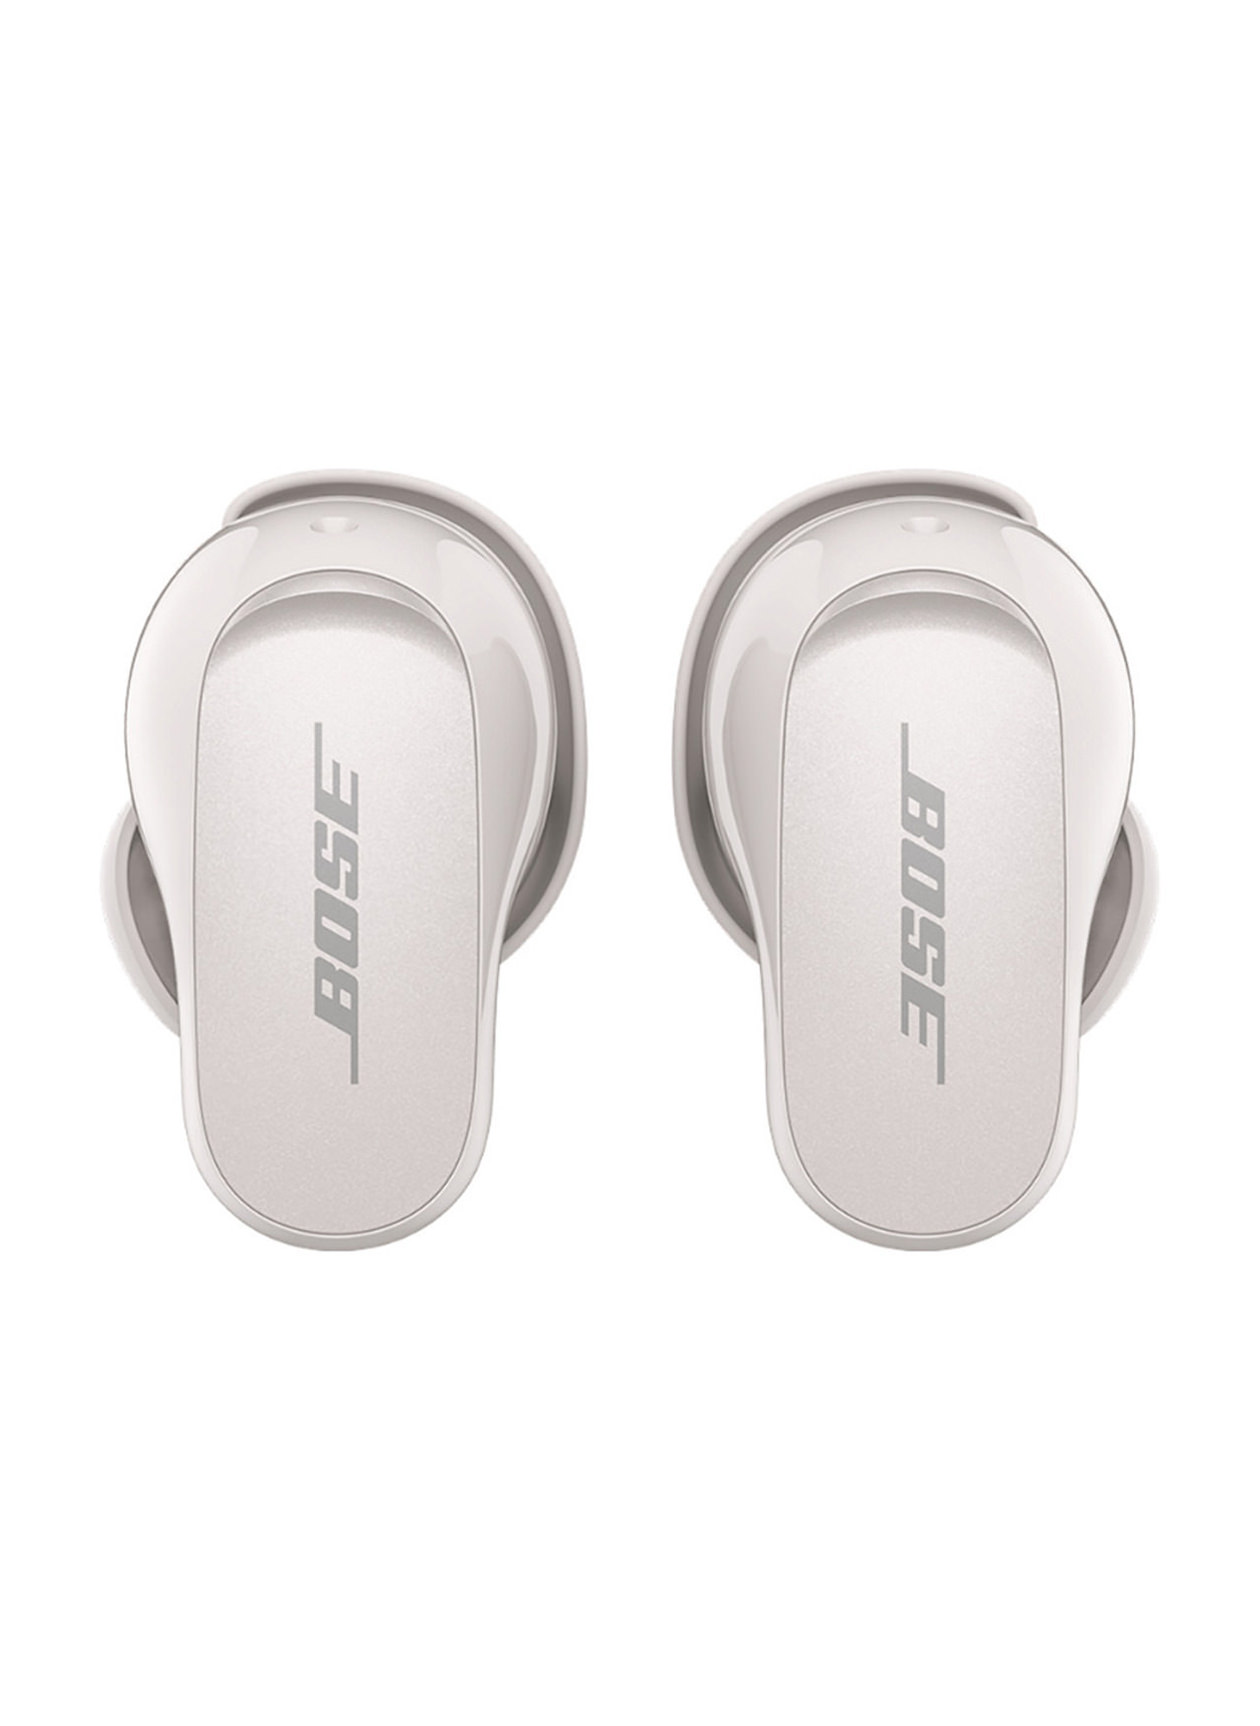 Bose Soapstone QuietComfort Earbuds II